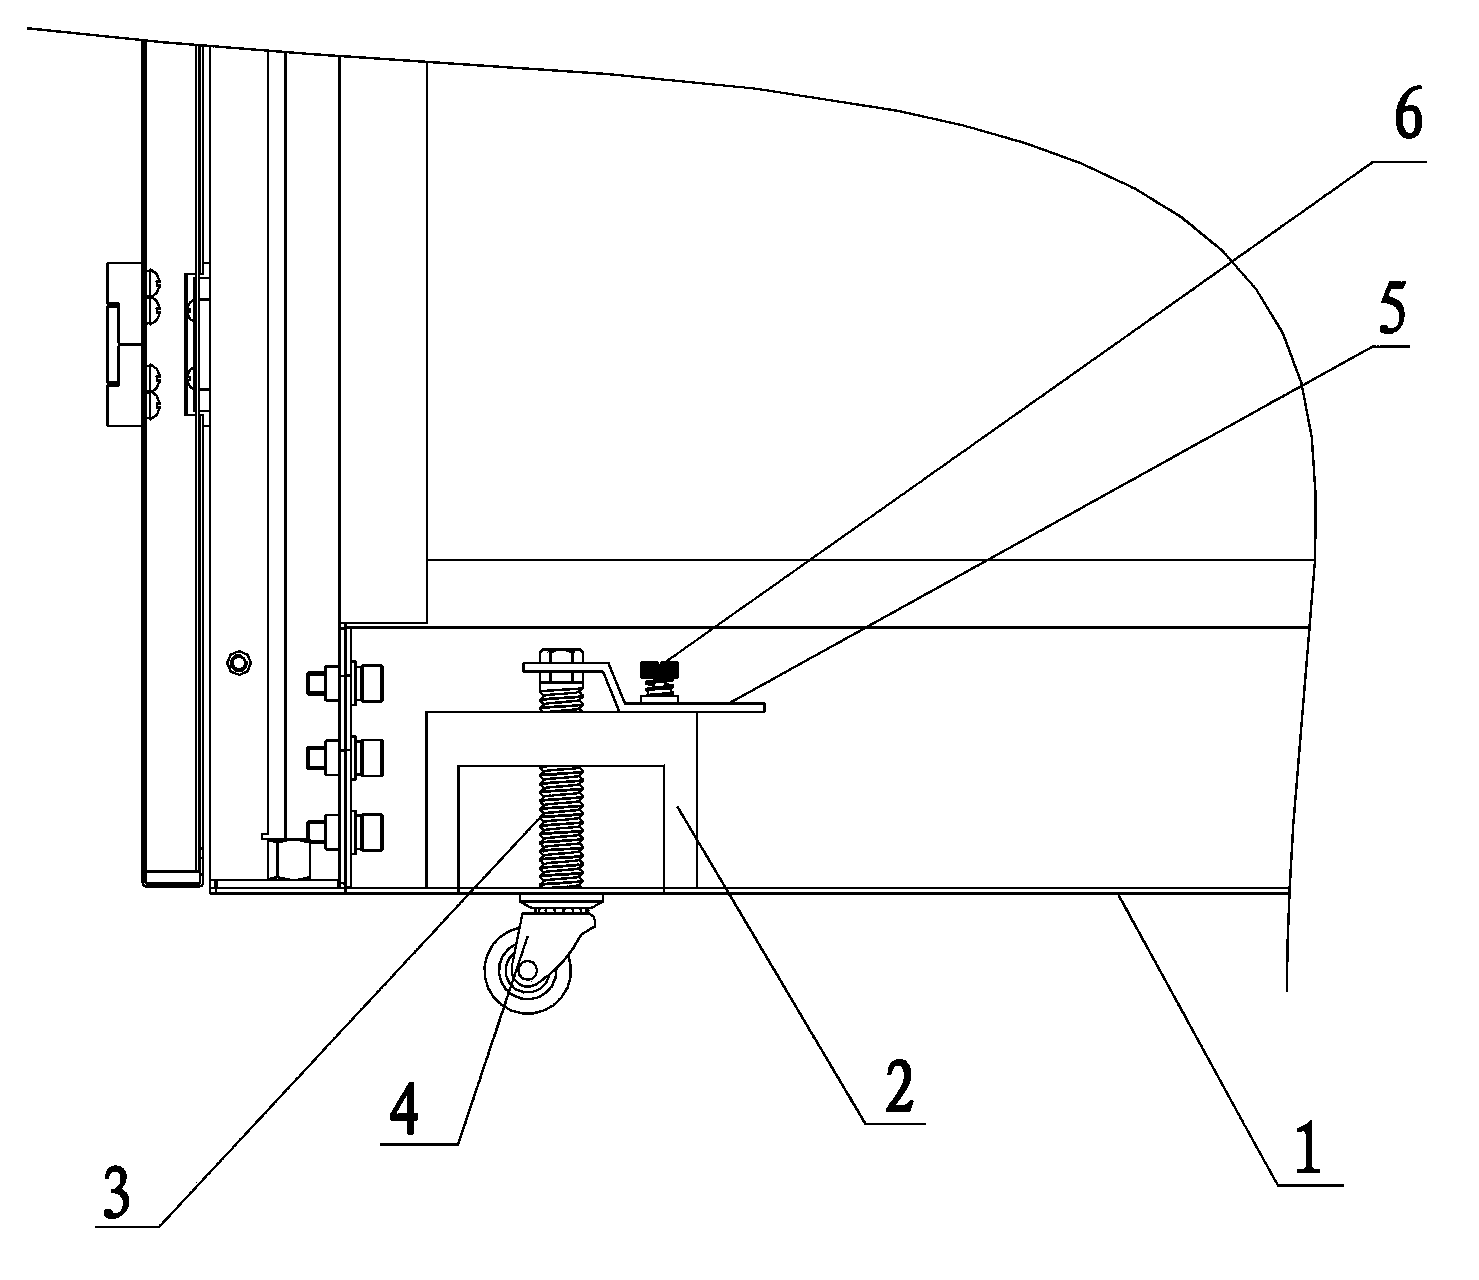 Retractable castor mechanism of rack